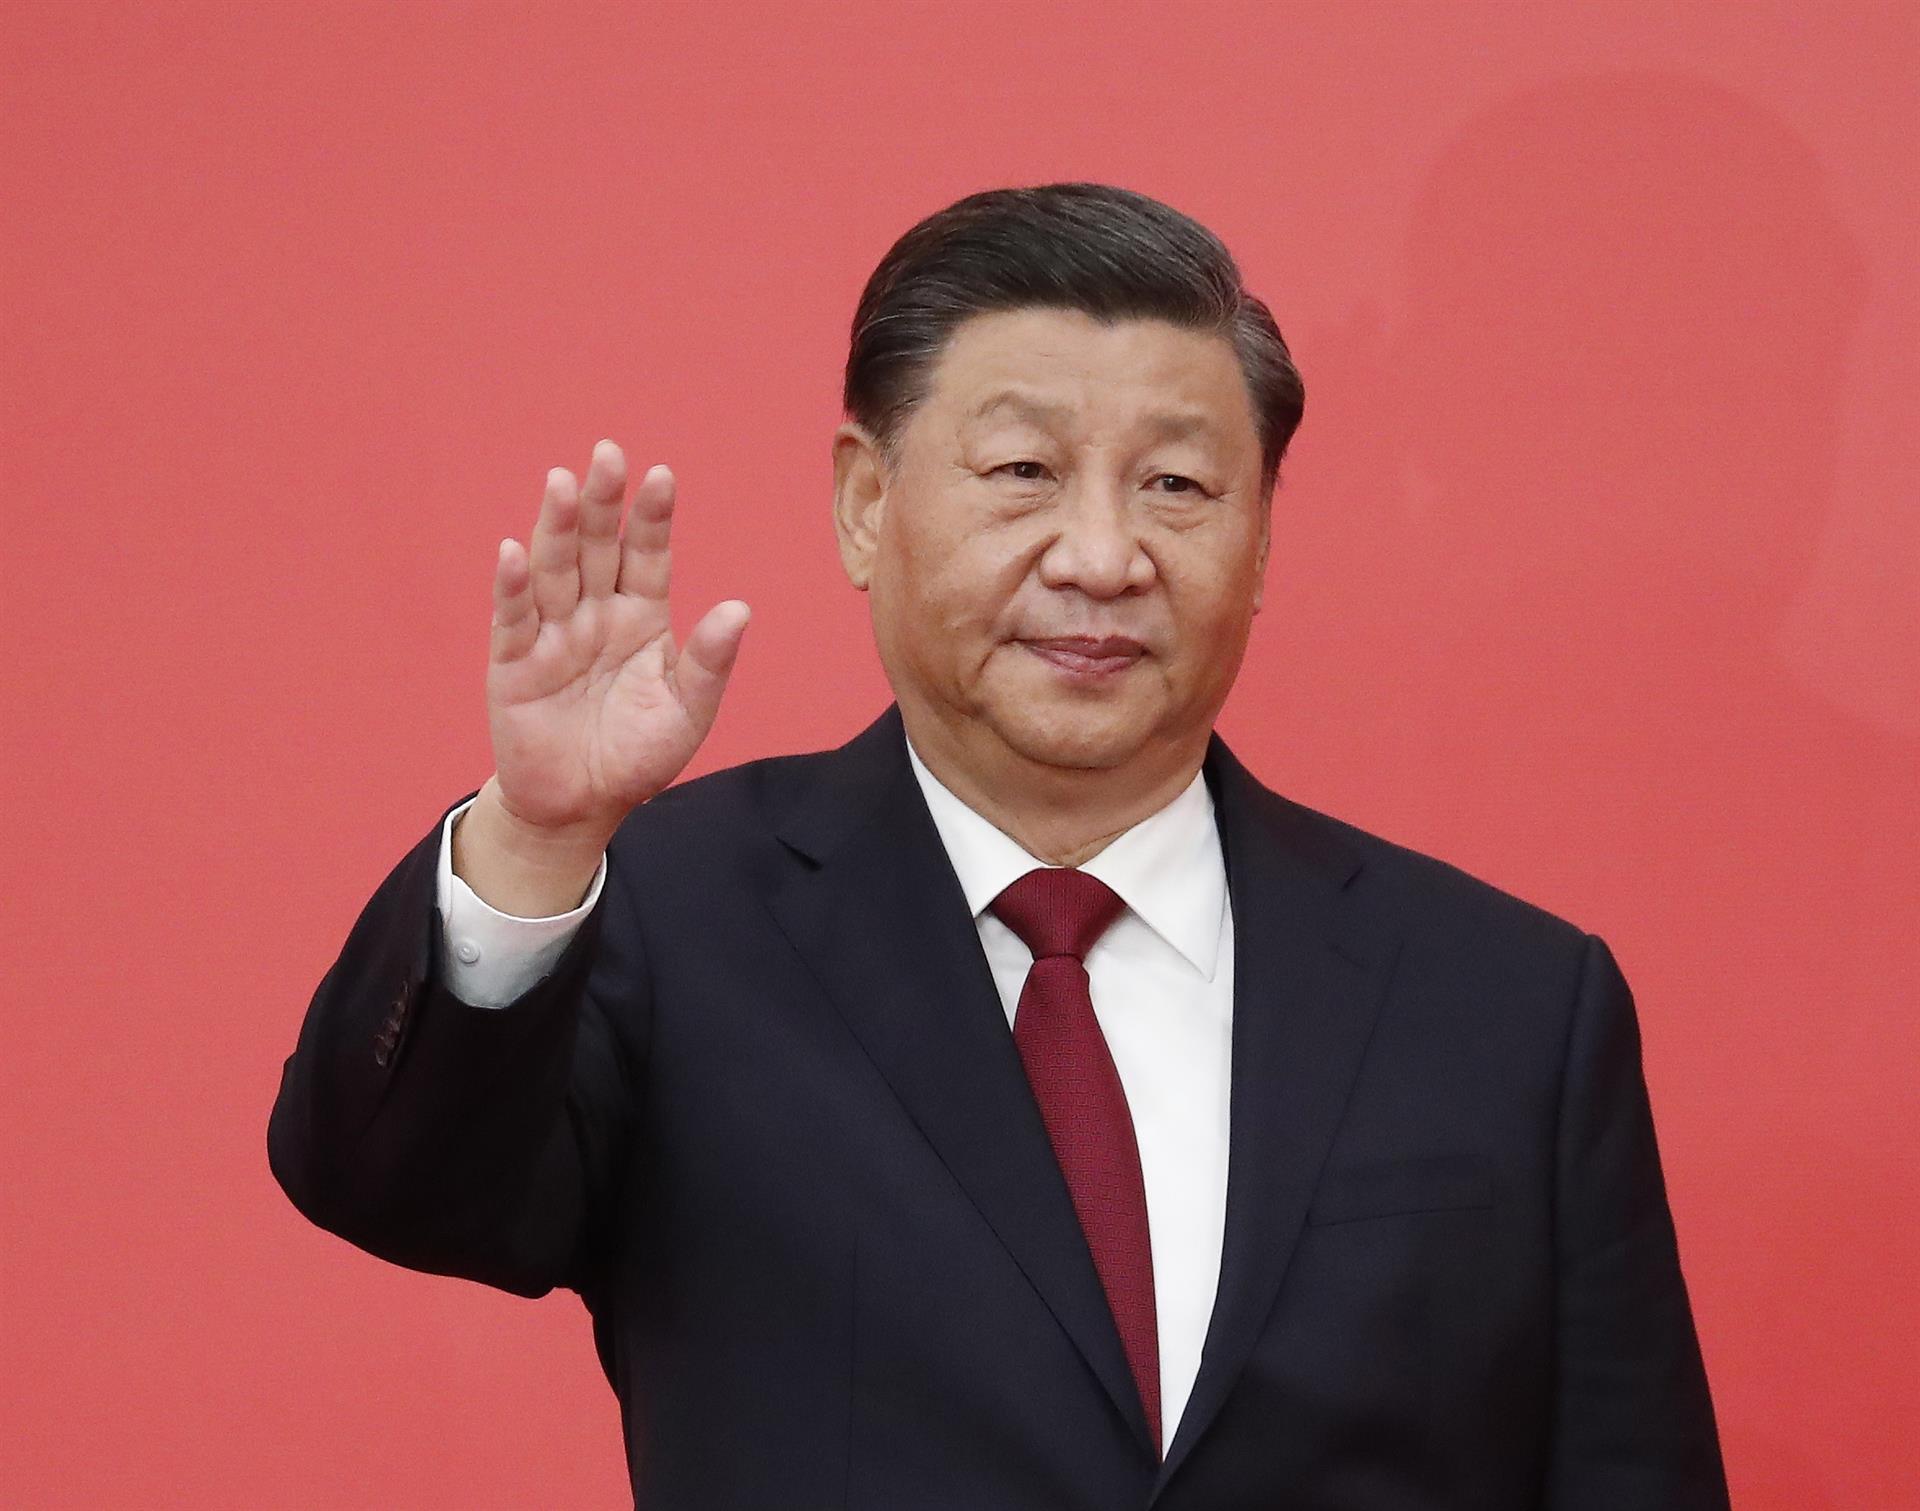 Xi Jinping asegura que China “está lista” para trabajar con EEUU y desarrollar “buenas relaciones”